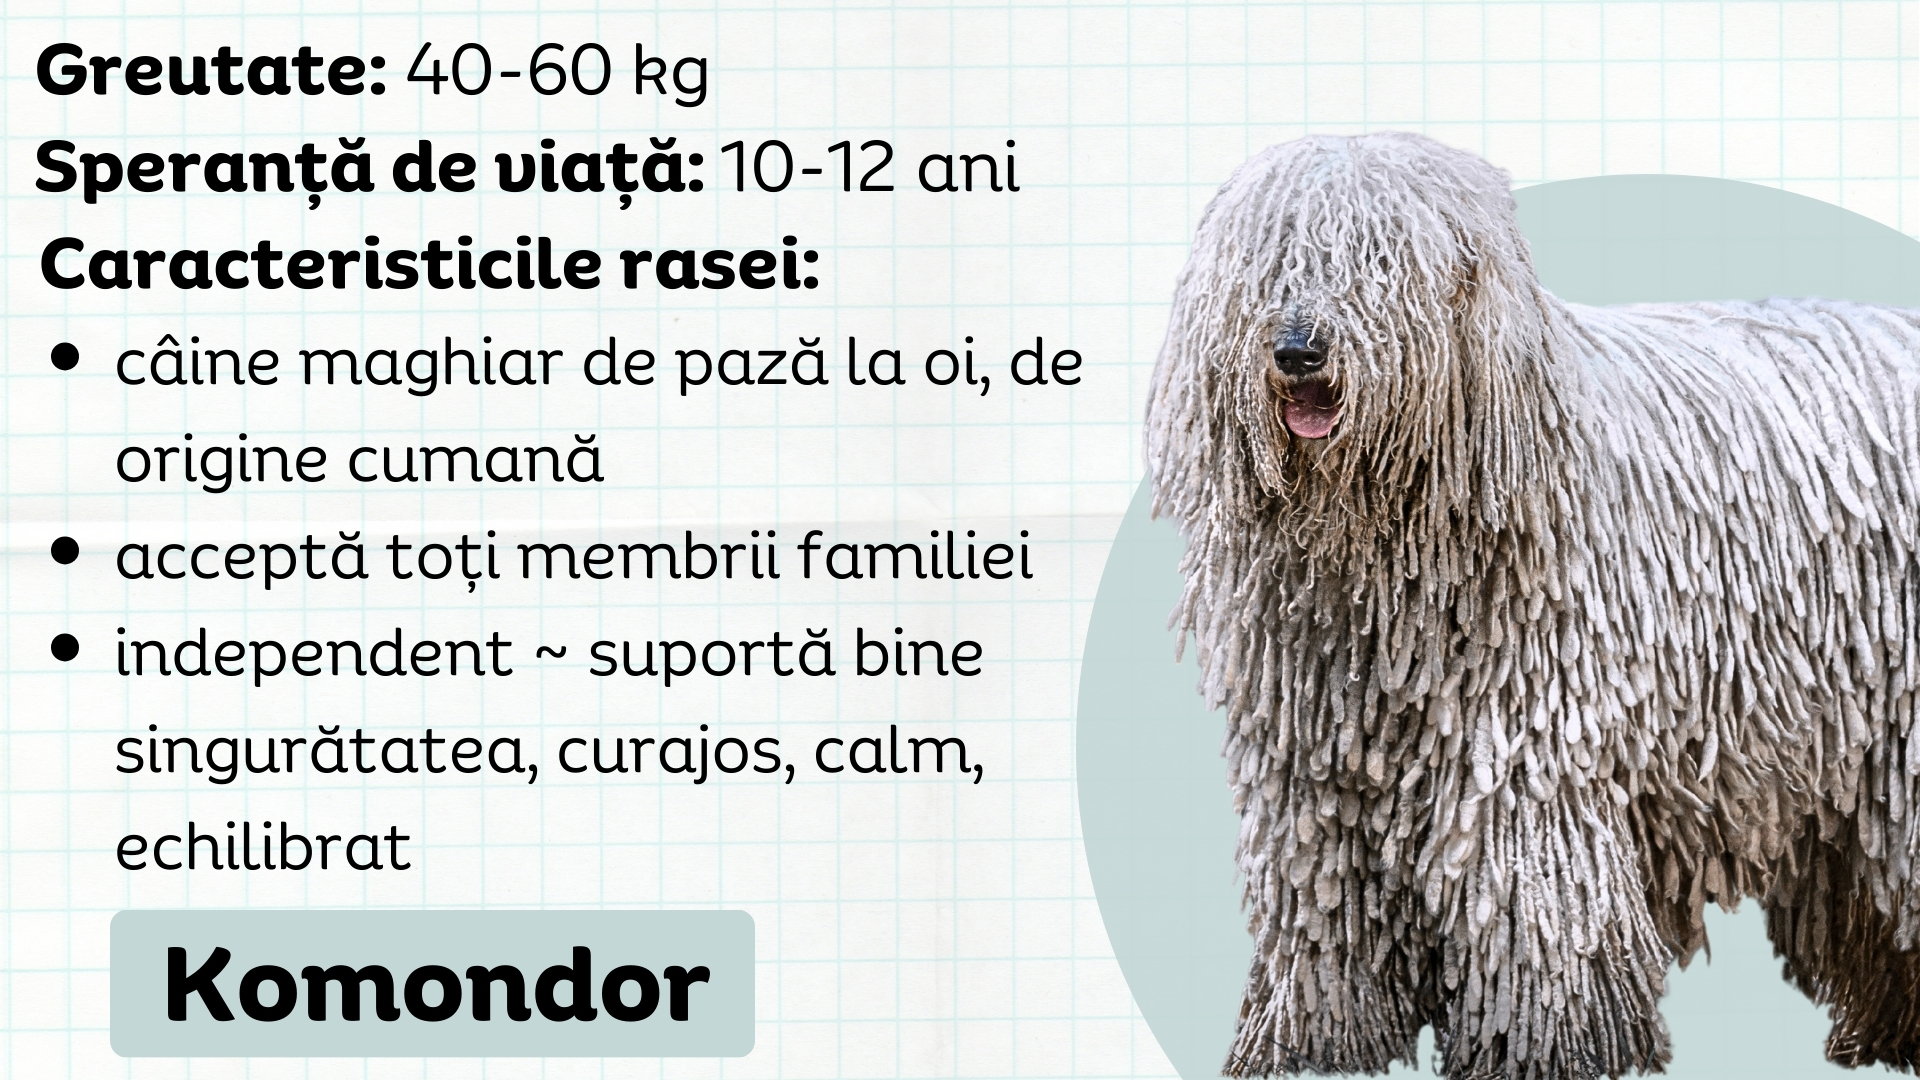 Komondor, câinele ciobănesc maghiar de origine cumană